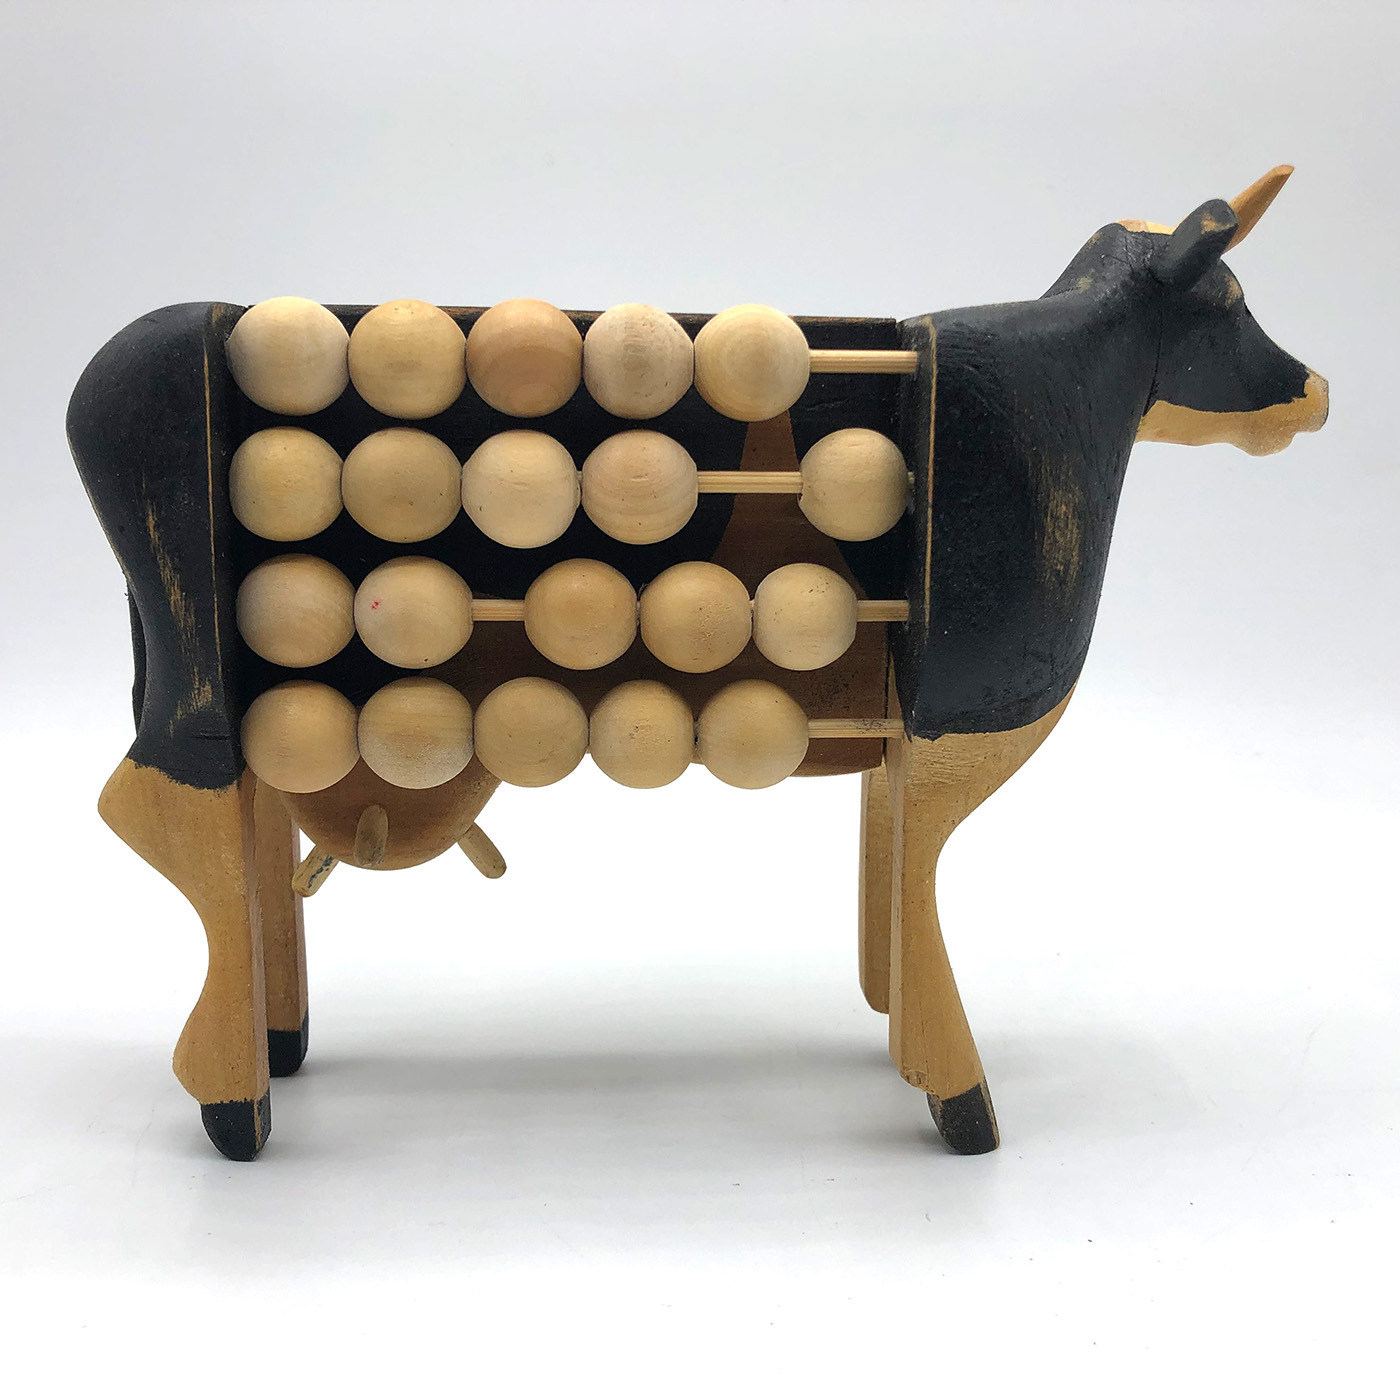 concept concept art conceptart conceptual cow design wood woodart